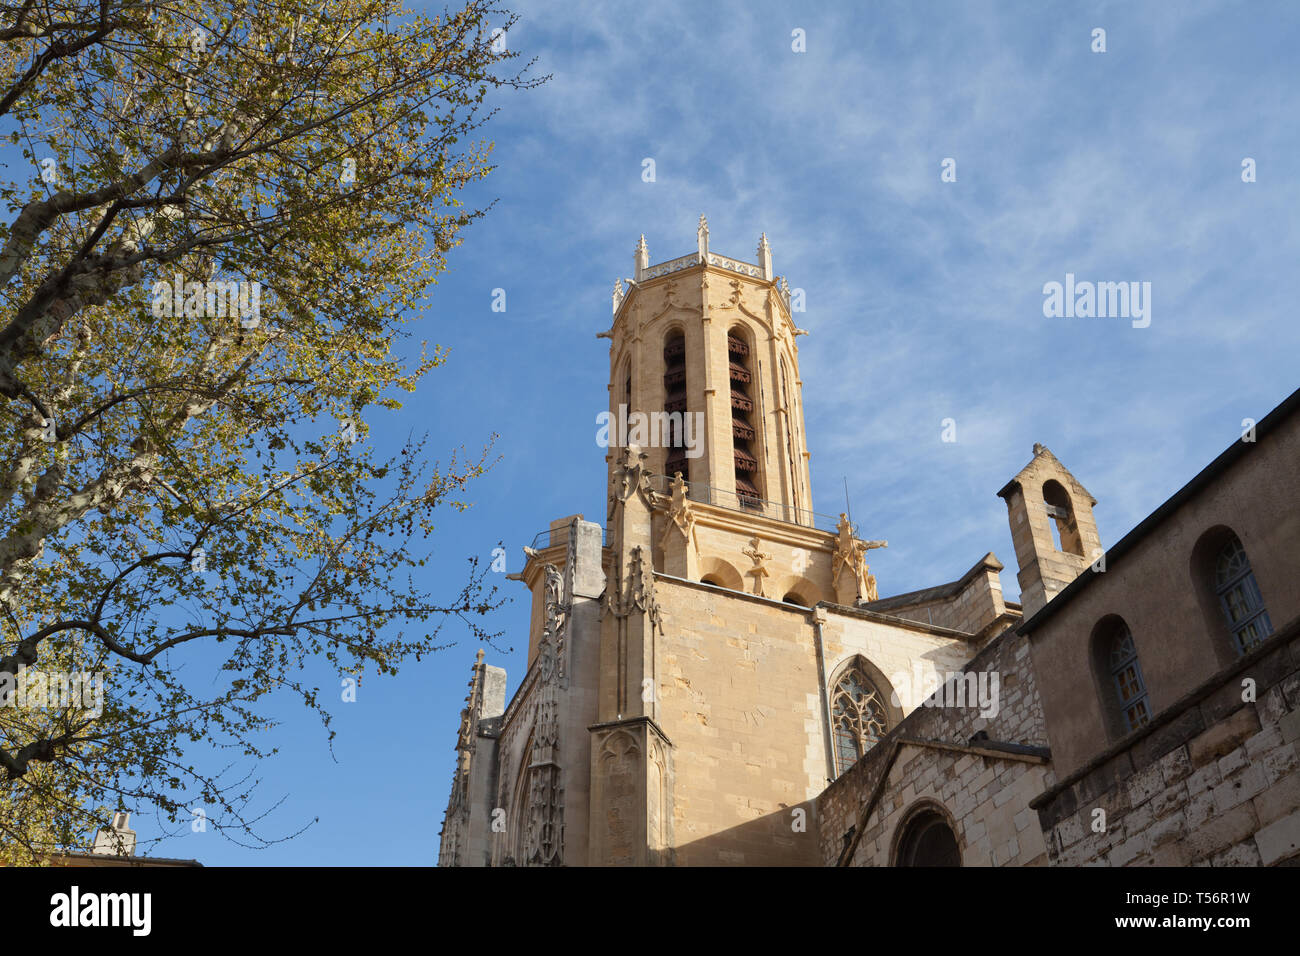 Cathédrale Saint-Sauveur, Aix-en-Provence, Provence-Alpes-Côte d'Azur, France. Stock Photo